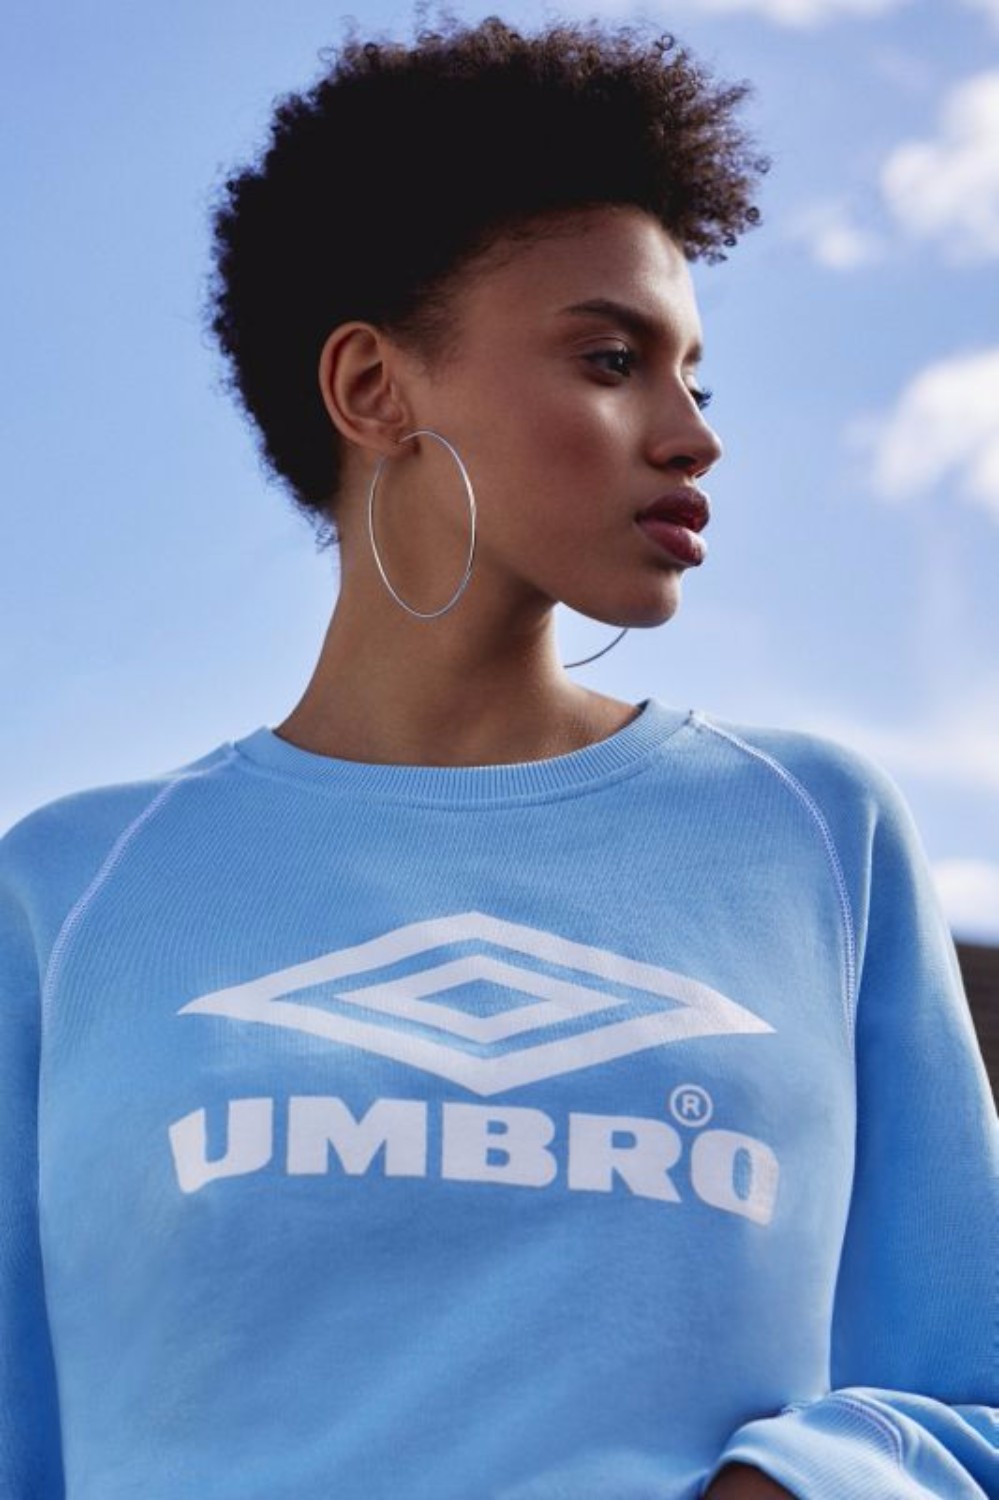 registreren Vertellen woordenboek Umbro Channels Effortless Cool With Women's Urban Outfitters Collaboration